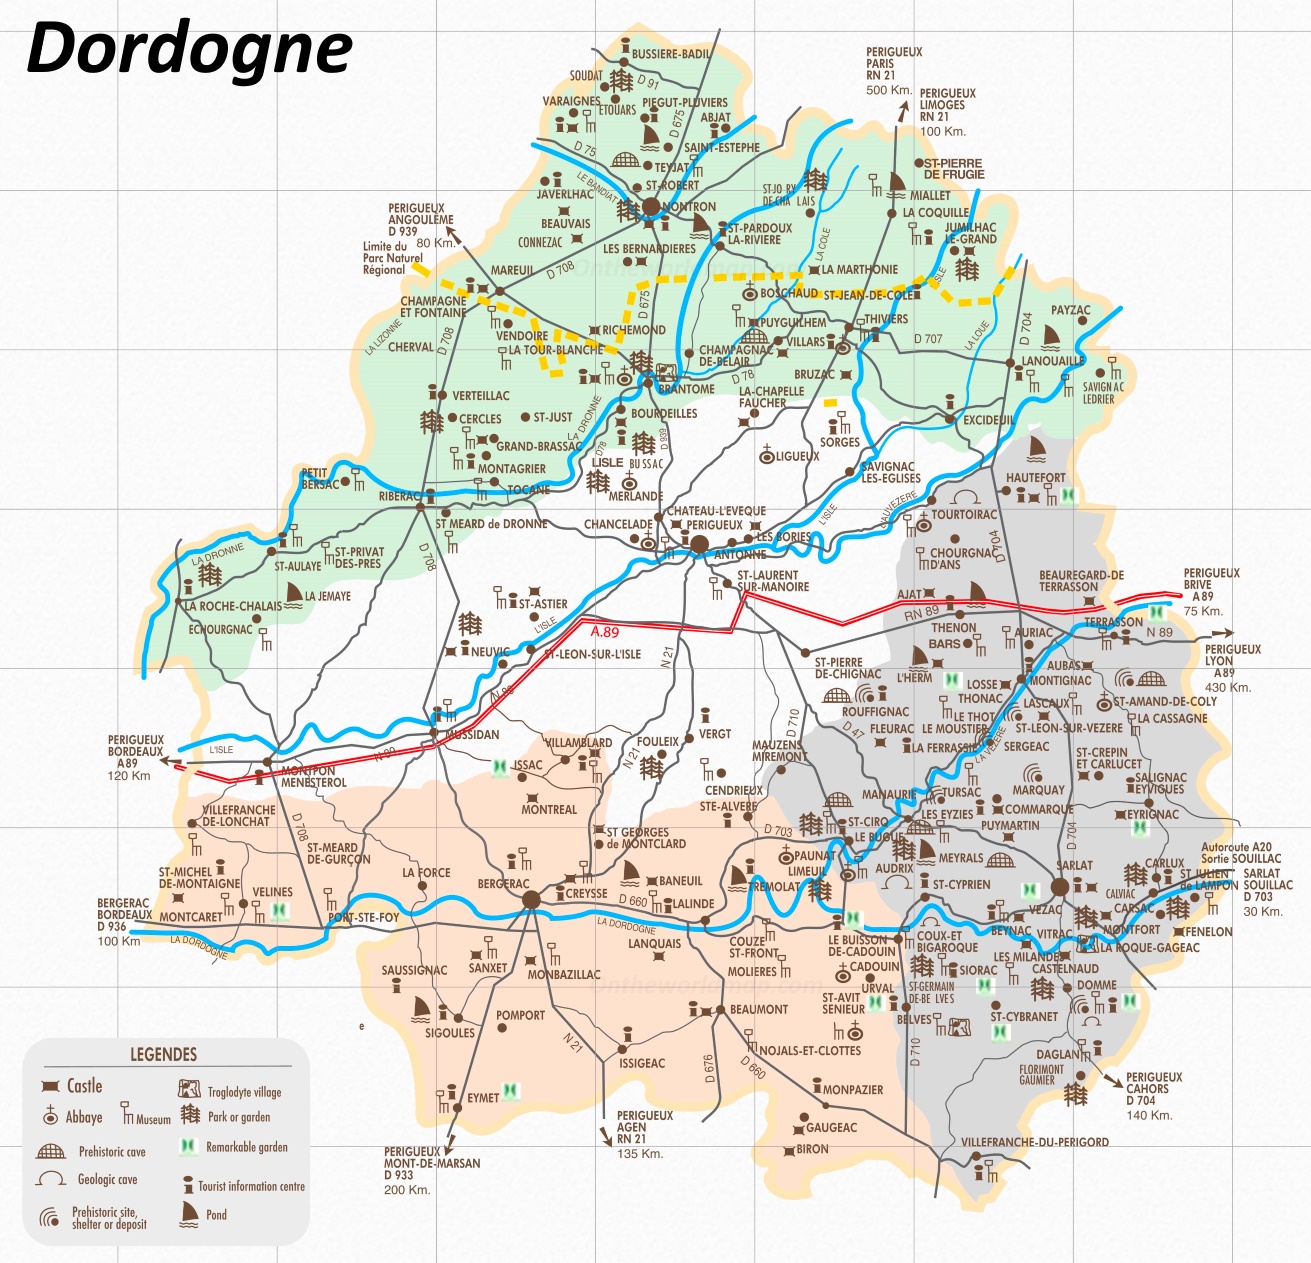 dordogne on map of france